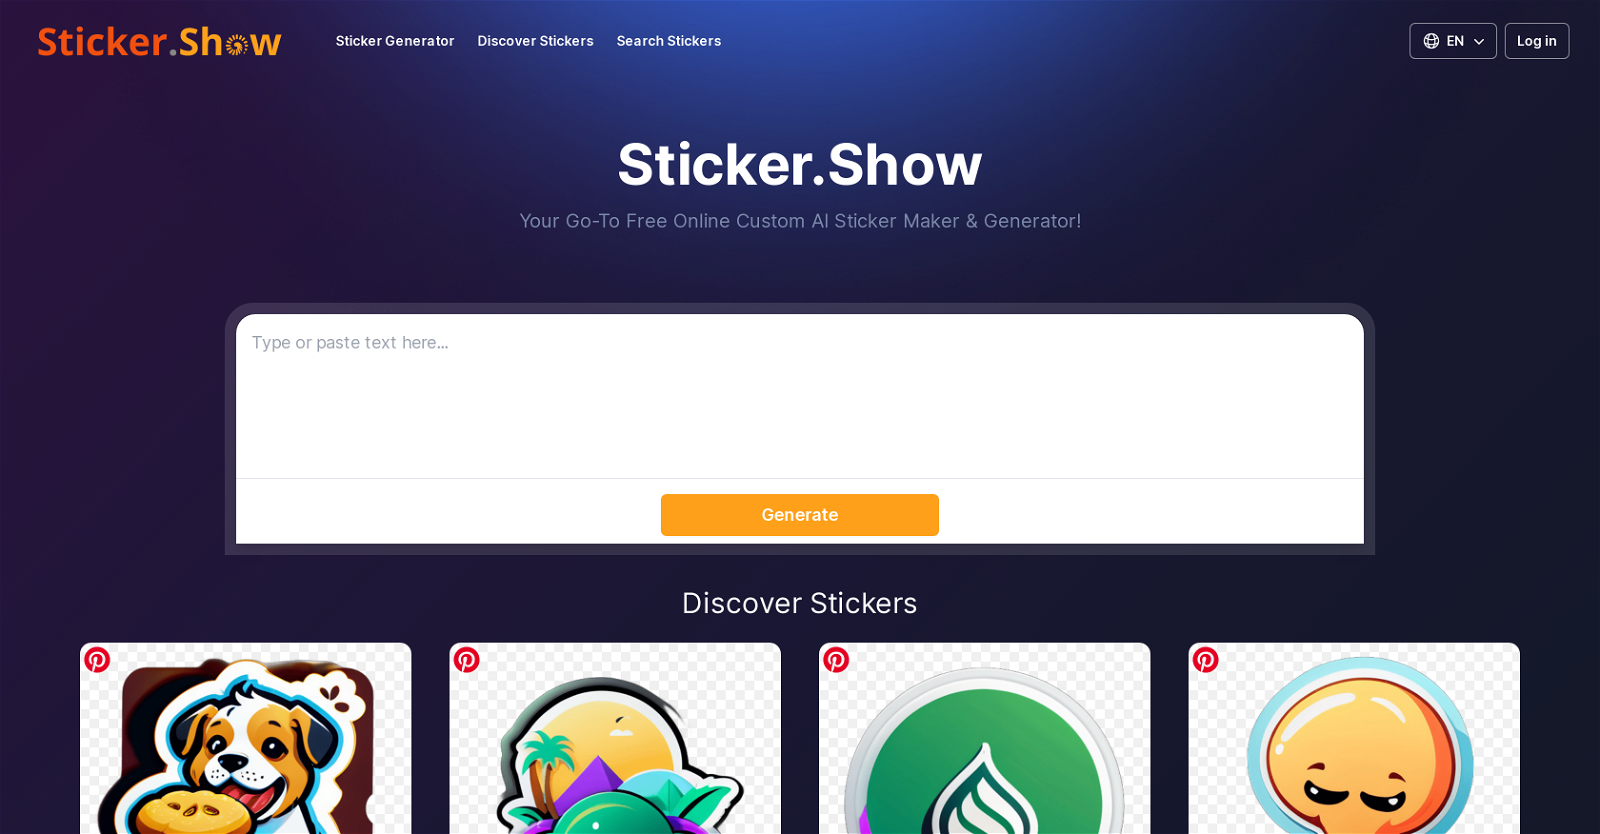 Sticker.Show website